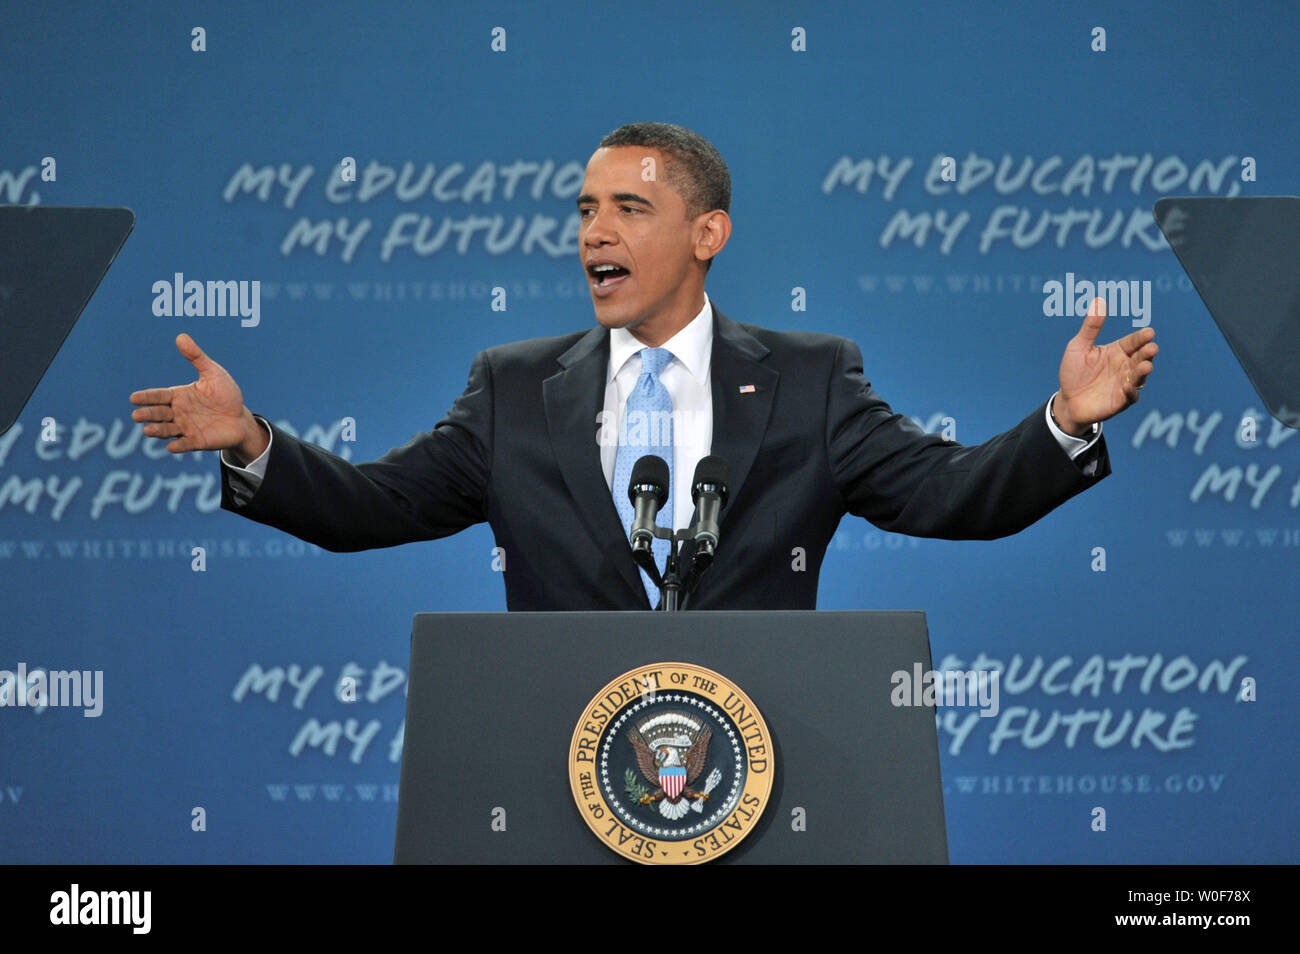 obama education speech september 8 2009